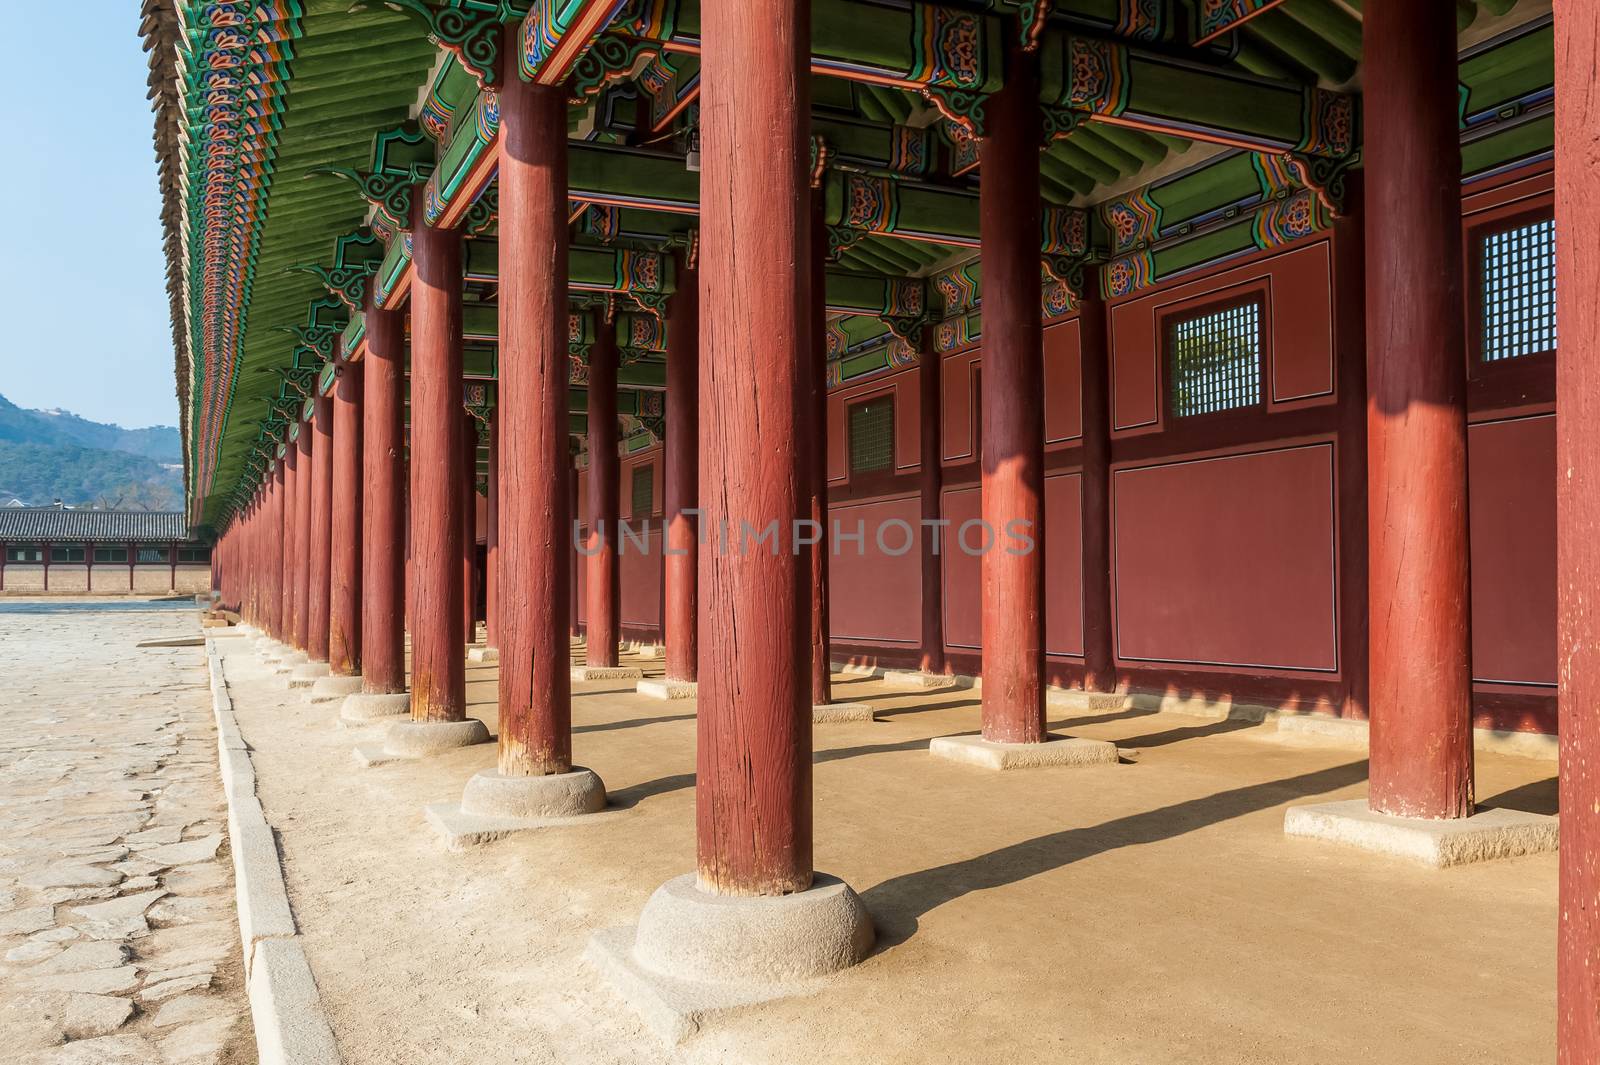 The Gallery of Gyeongbokgung Palace by JasonYU